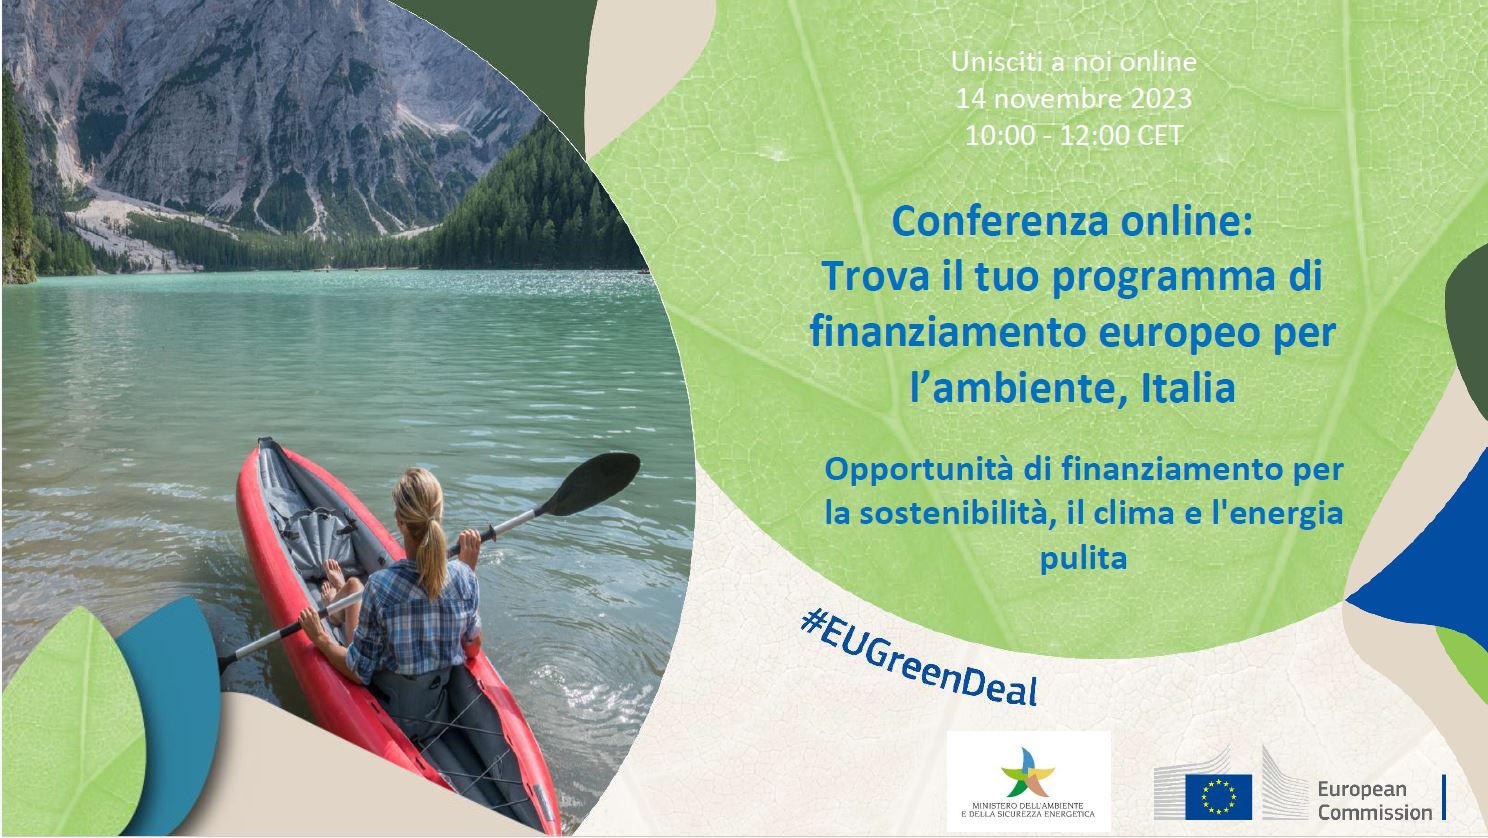 Evento online “Trova il tuo programma di finanziamento europeo per l’ambiente, Italia – Opportunità di finanziamento per la sostenibilità, il clima e l'energia pulita”. 14 novembre 2023.